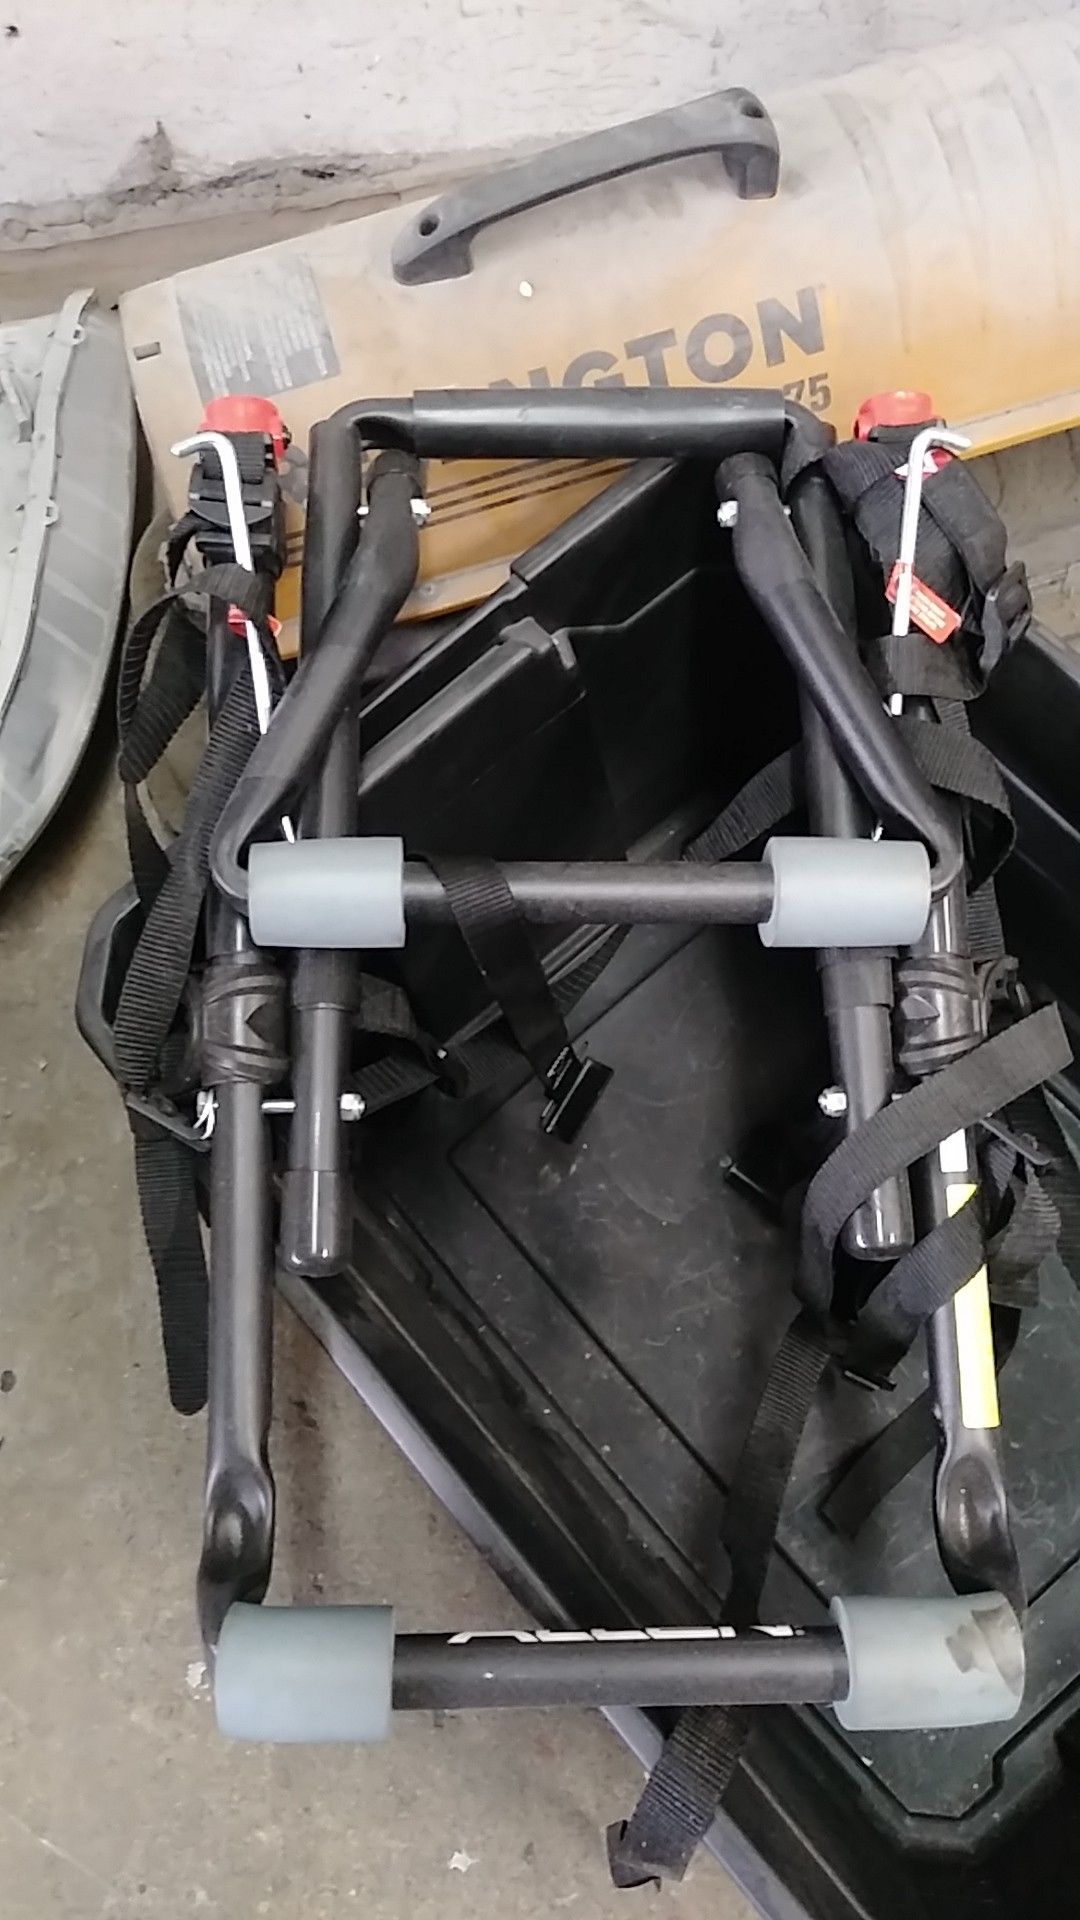 New bike rack